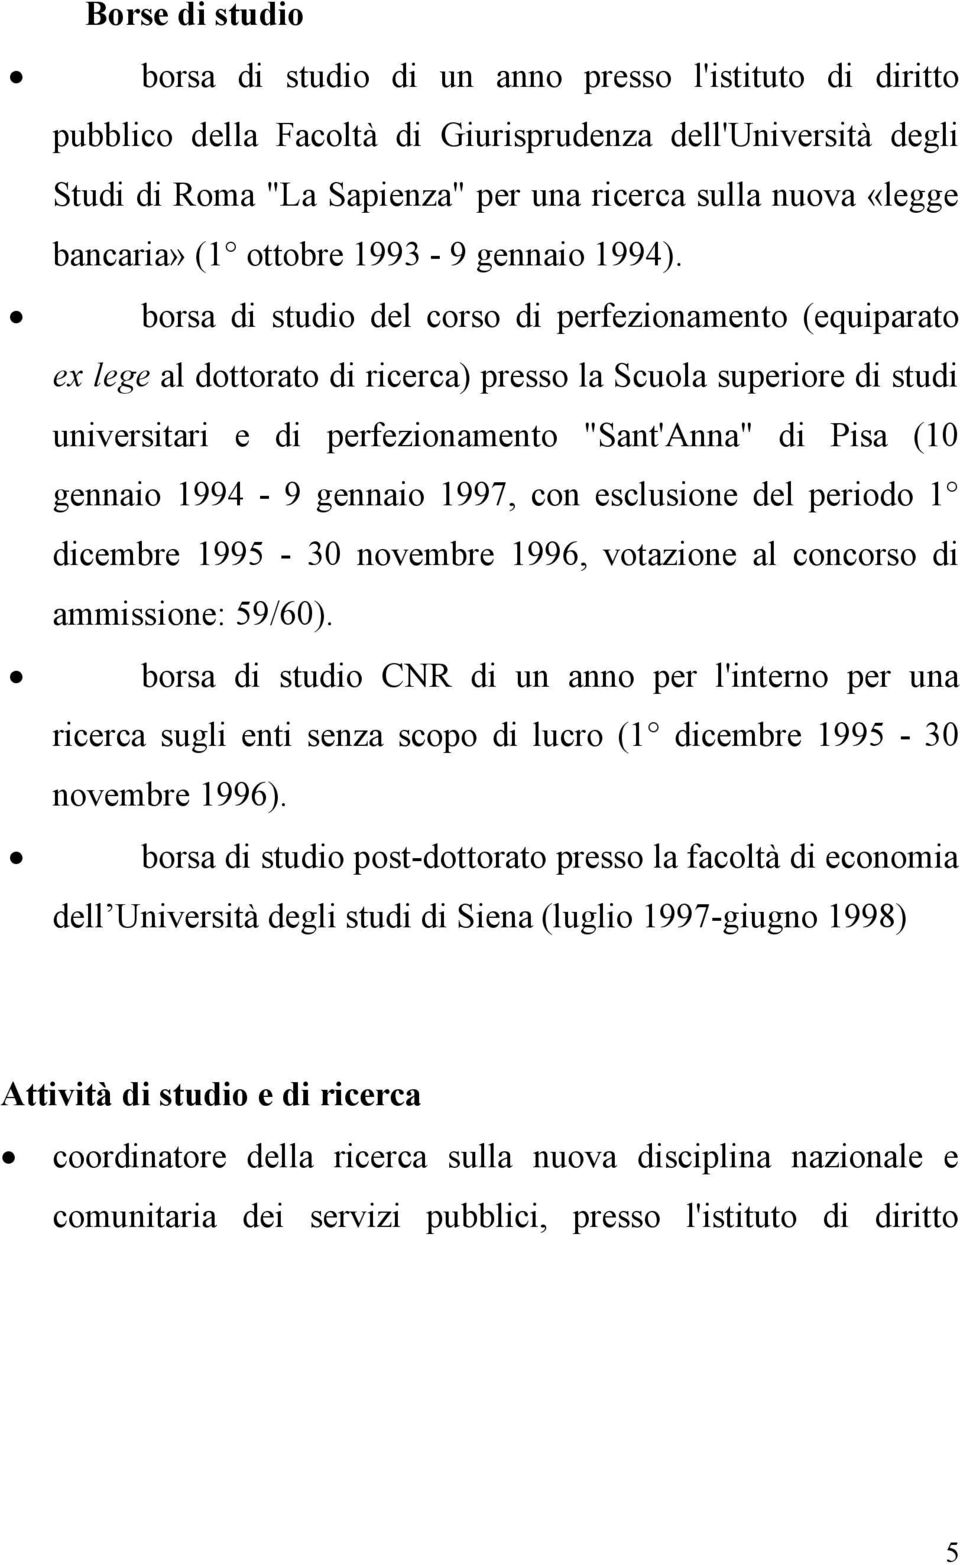 borsa di studio del corso di perfezionamento (equiparato ex lege al dottorato di ricerca) presso la Scuola superiore di studi universitari e di perfezionamento "Sant'Anna" di Pisa (10 gennaio 1994-9